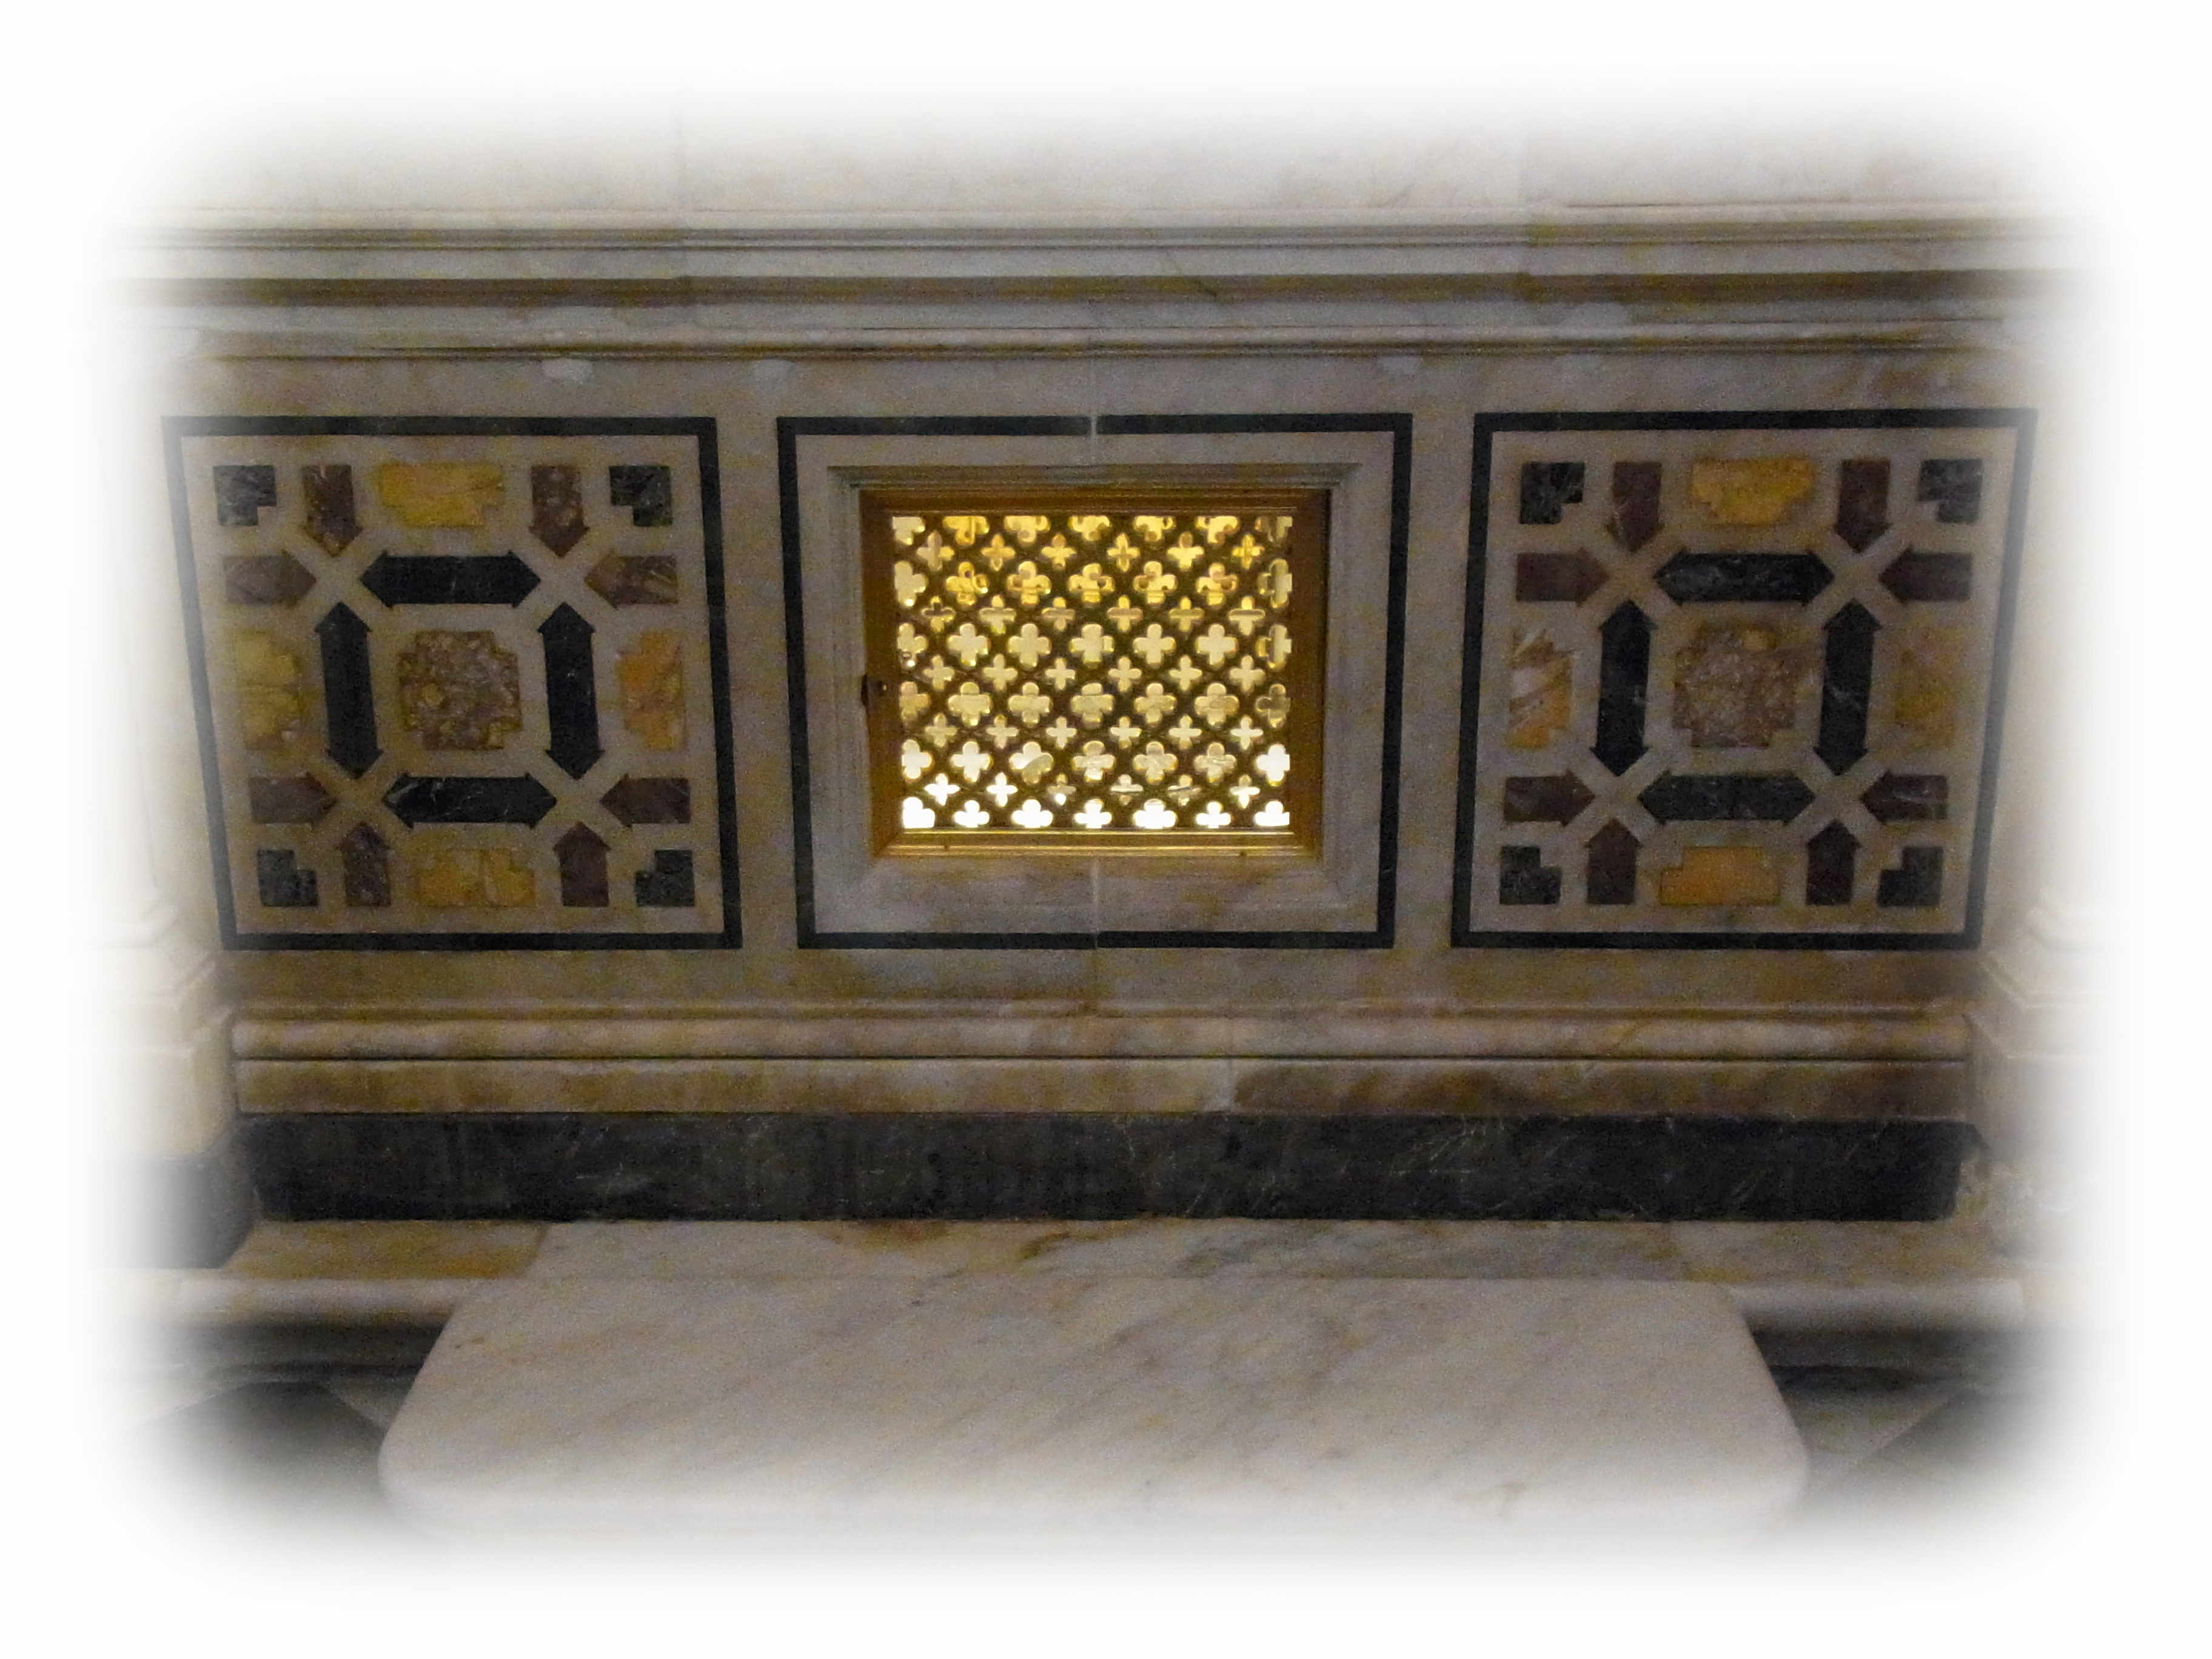 地下聖堂内の覗き窓の奥に、聖アンデレ聖遺物の格納容器が見える